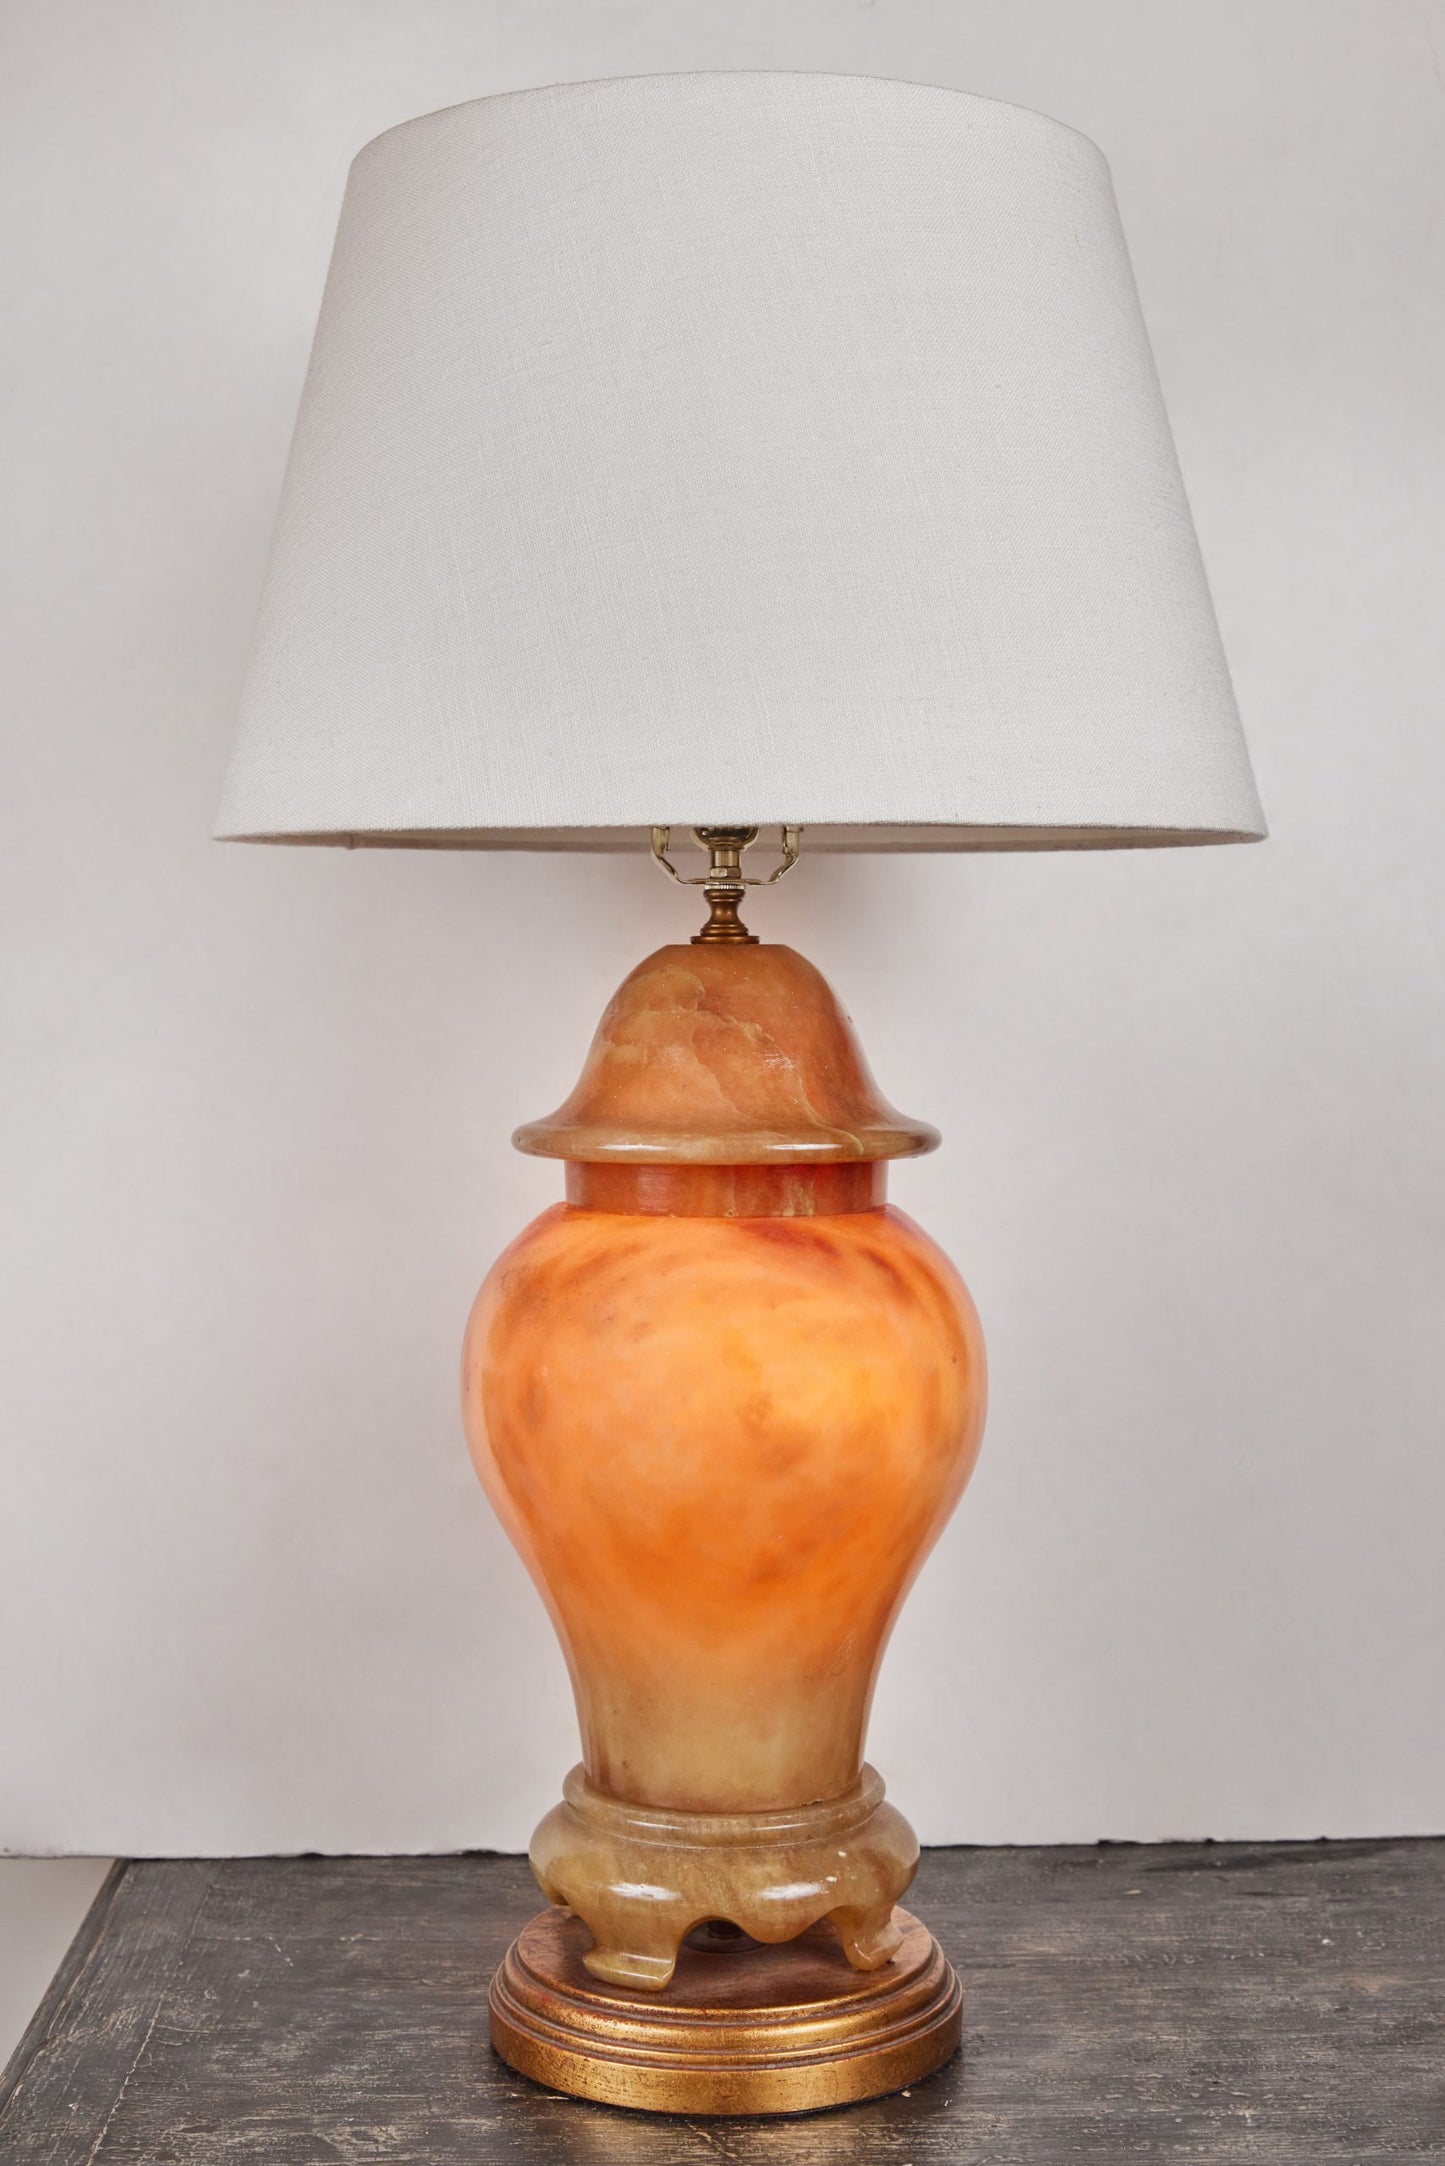 Urn-Form Alabaster Table Lamps